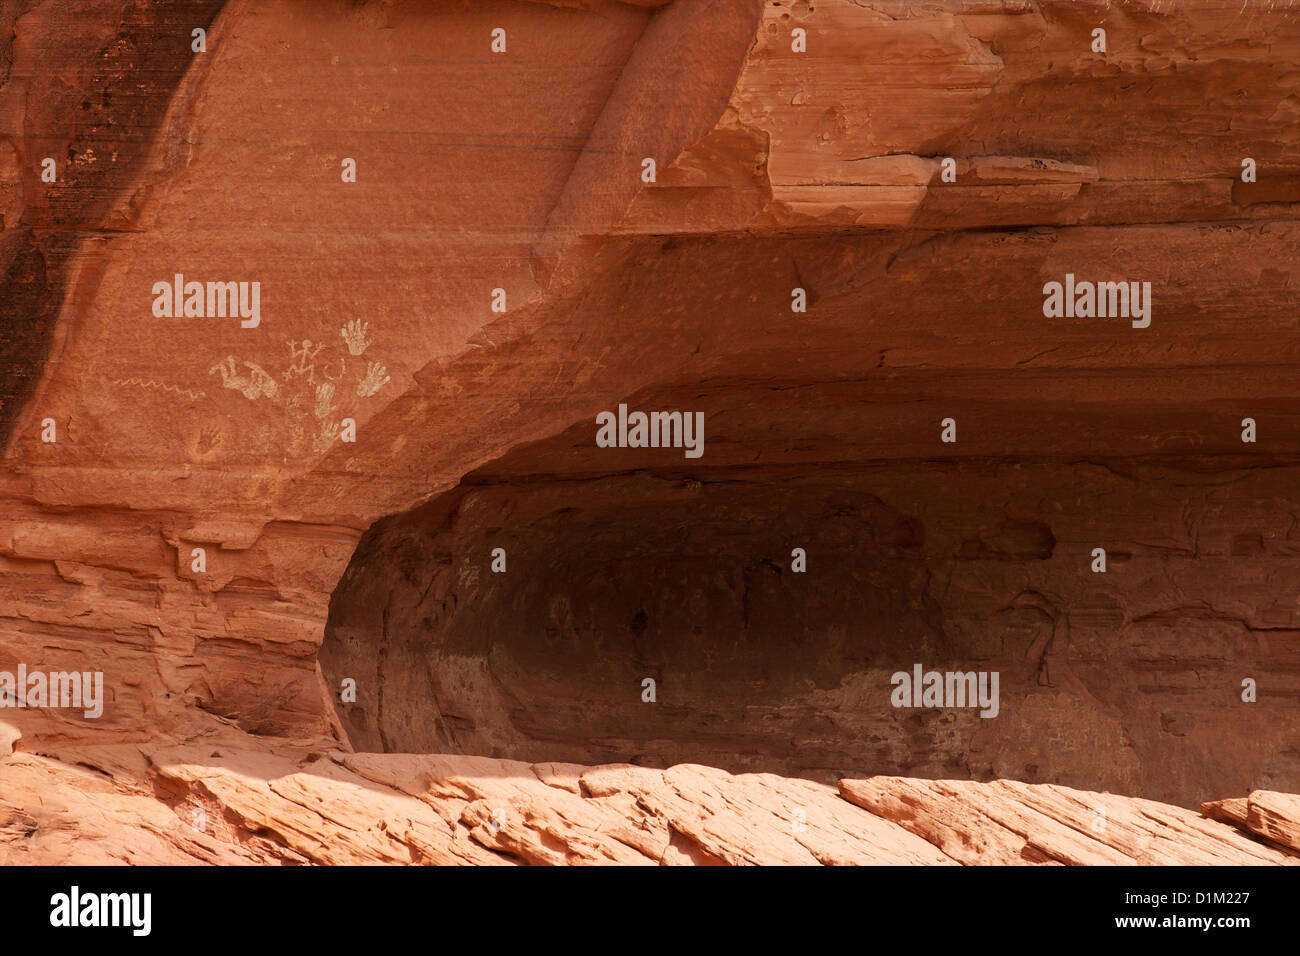 Pictogrammes Amérindiens part des formes sur les murs de grès Chinle Wash Canyon, Canyon de Chelly NM Arizona USA Banque D'Images